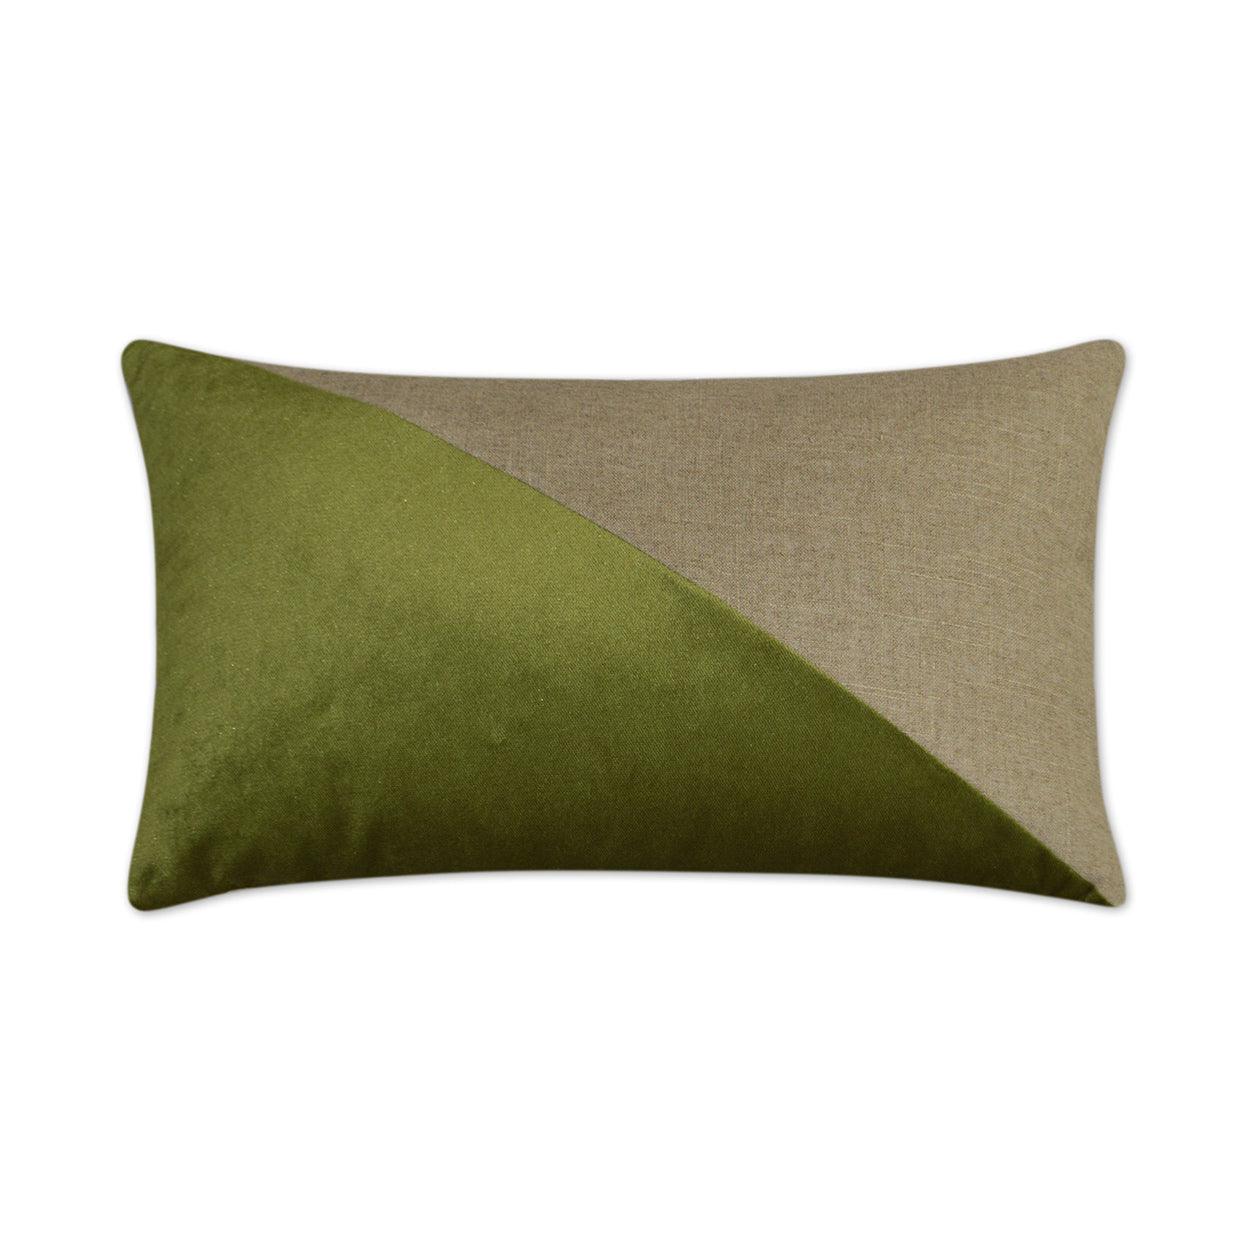 Jefferson Lumbar Aloe Color block Green Large Throw Pillow With Insert Throw Pillows LOOMLAN By D.V. Kap